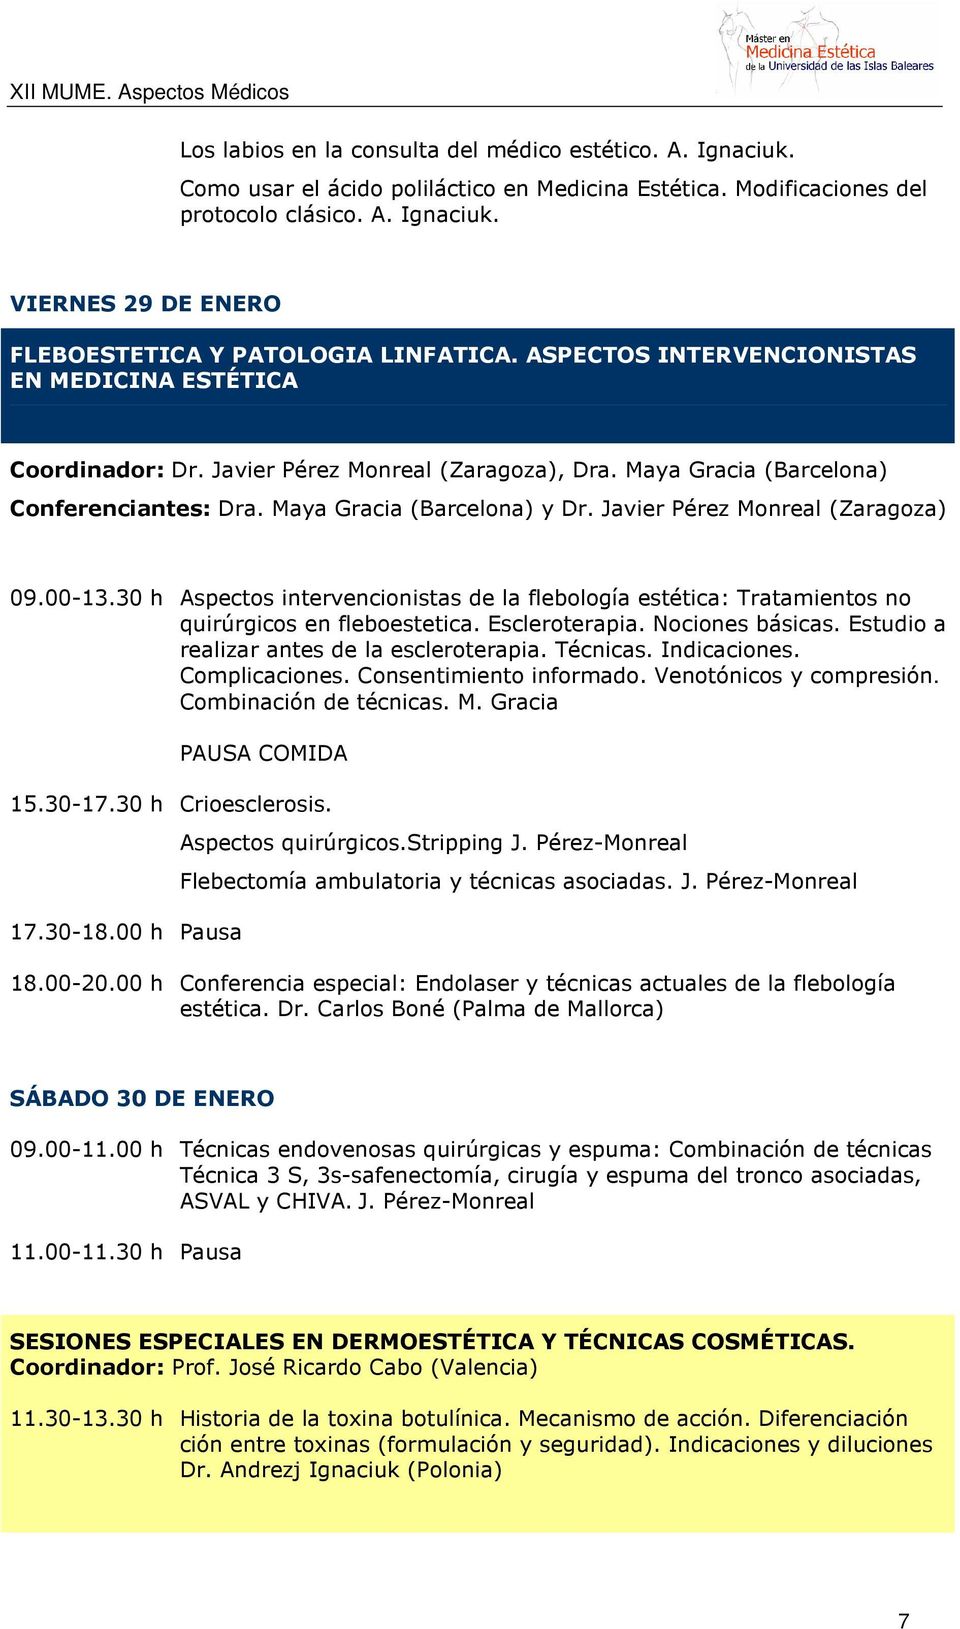 Javier Pérez Monreal (Zaragoza) 09.00-13.30 h Aspectos intervencionistas de la flebología estética: Tratamientos no quirúrgicos en fleboestetica. Escleroterapia. Nociones básicas.